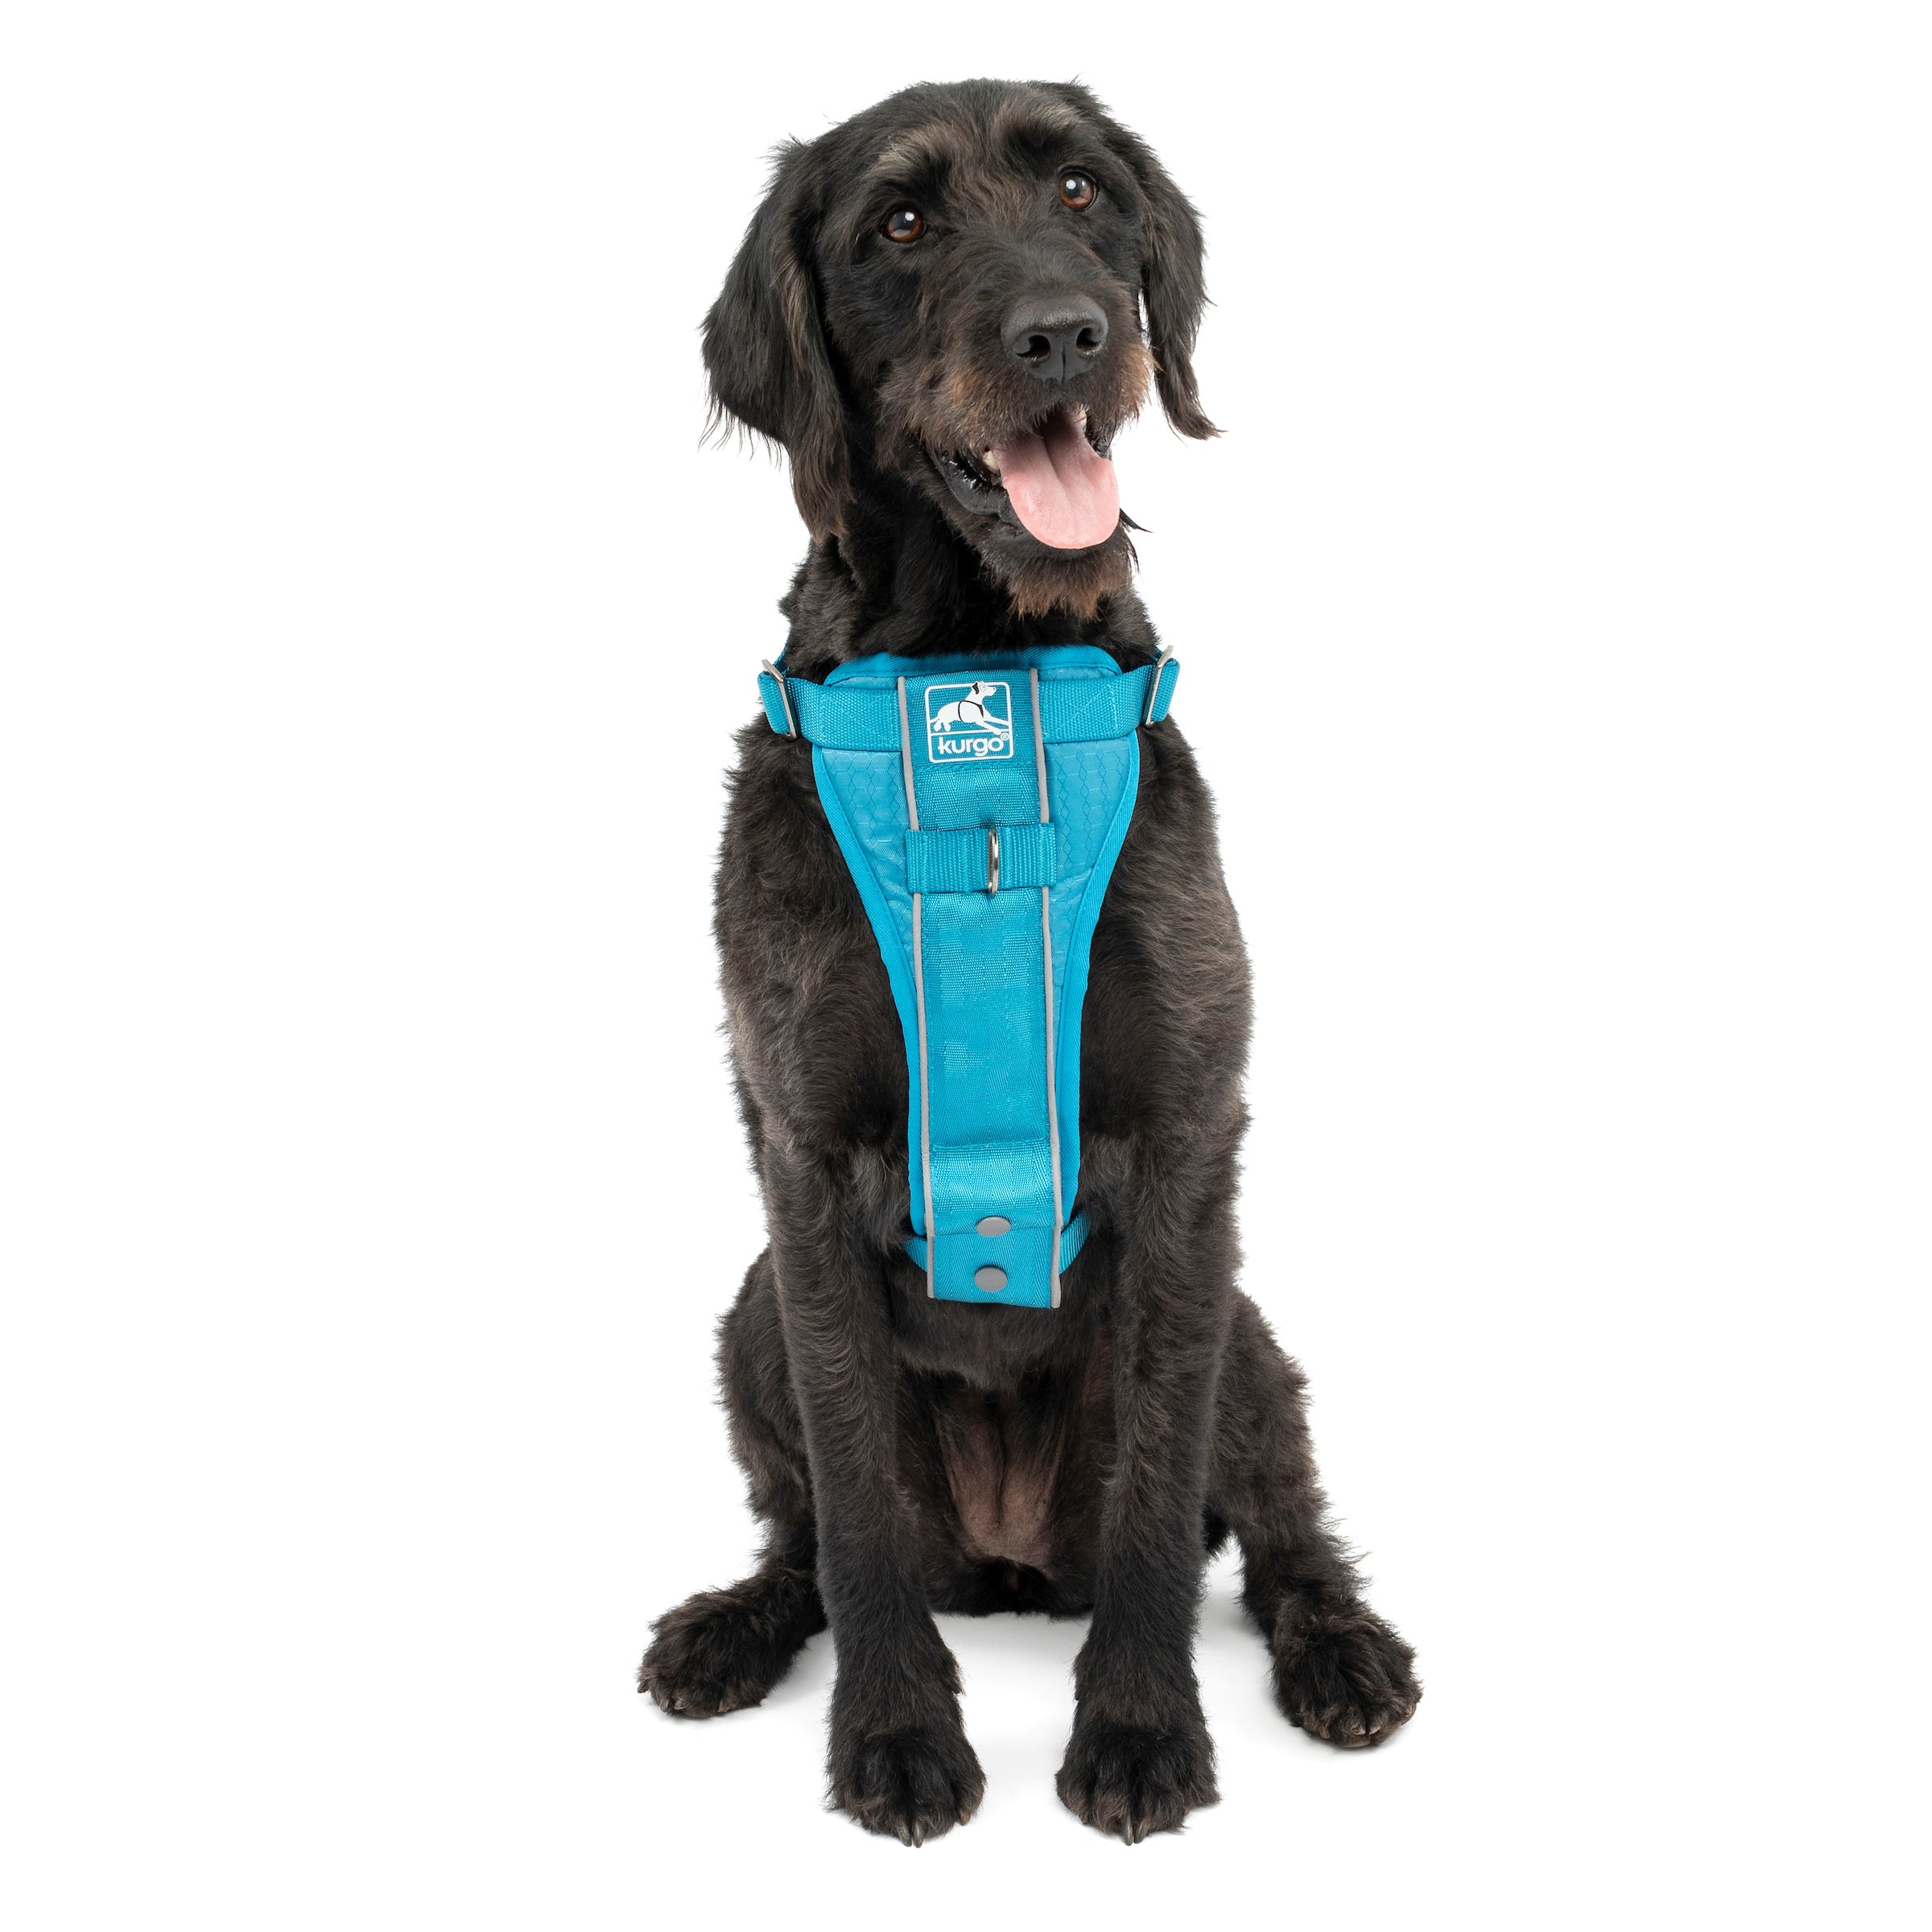 Kurgo Tru-Fit Smart Dog Walking Harness - Black - M